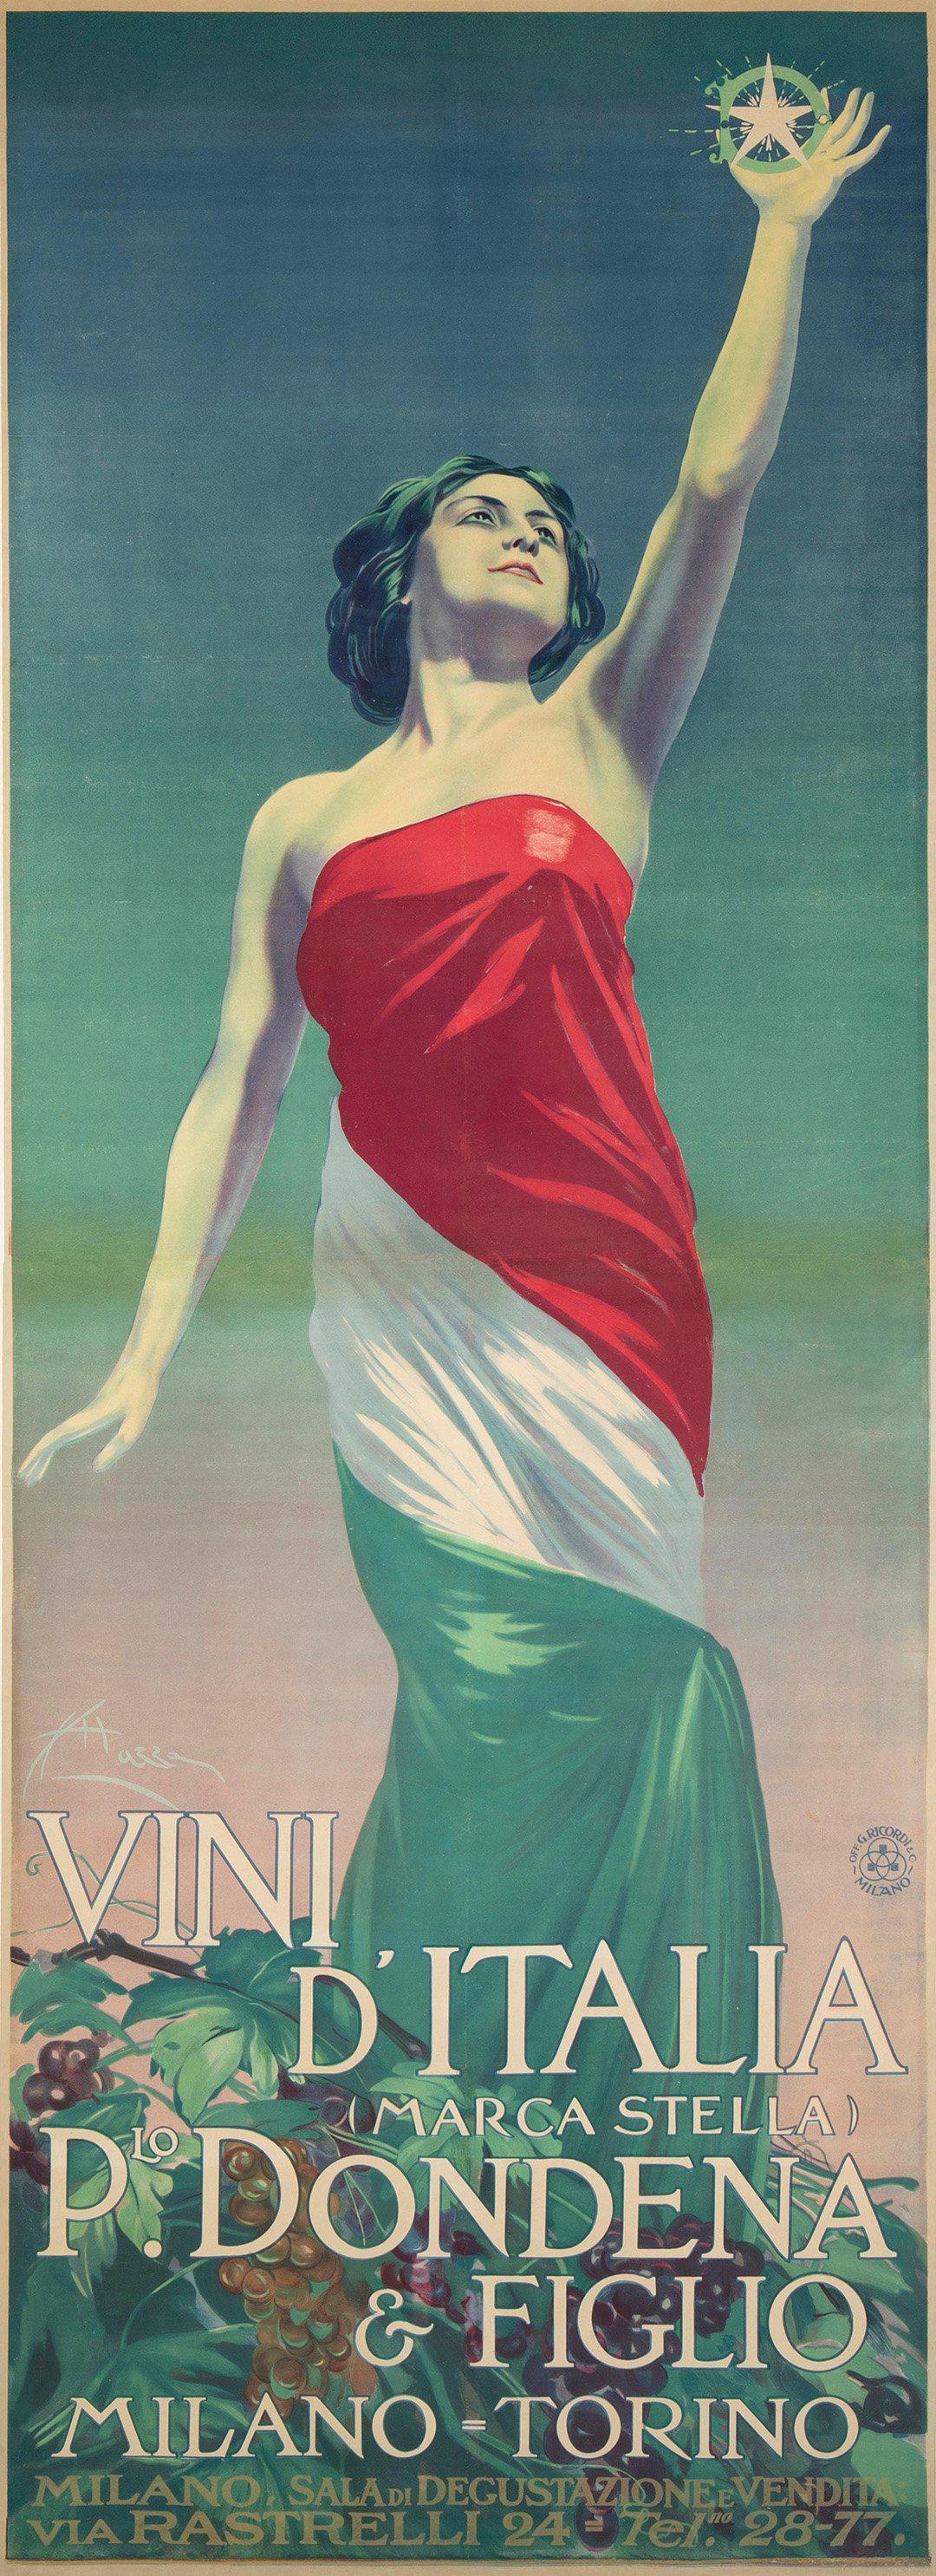 Vini D'Italia Rare Original Italian Poster by Aldo Mazza c1920